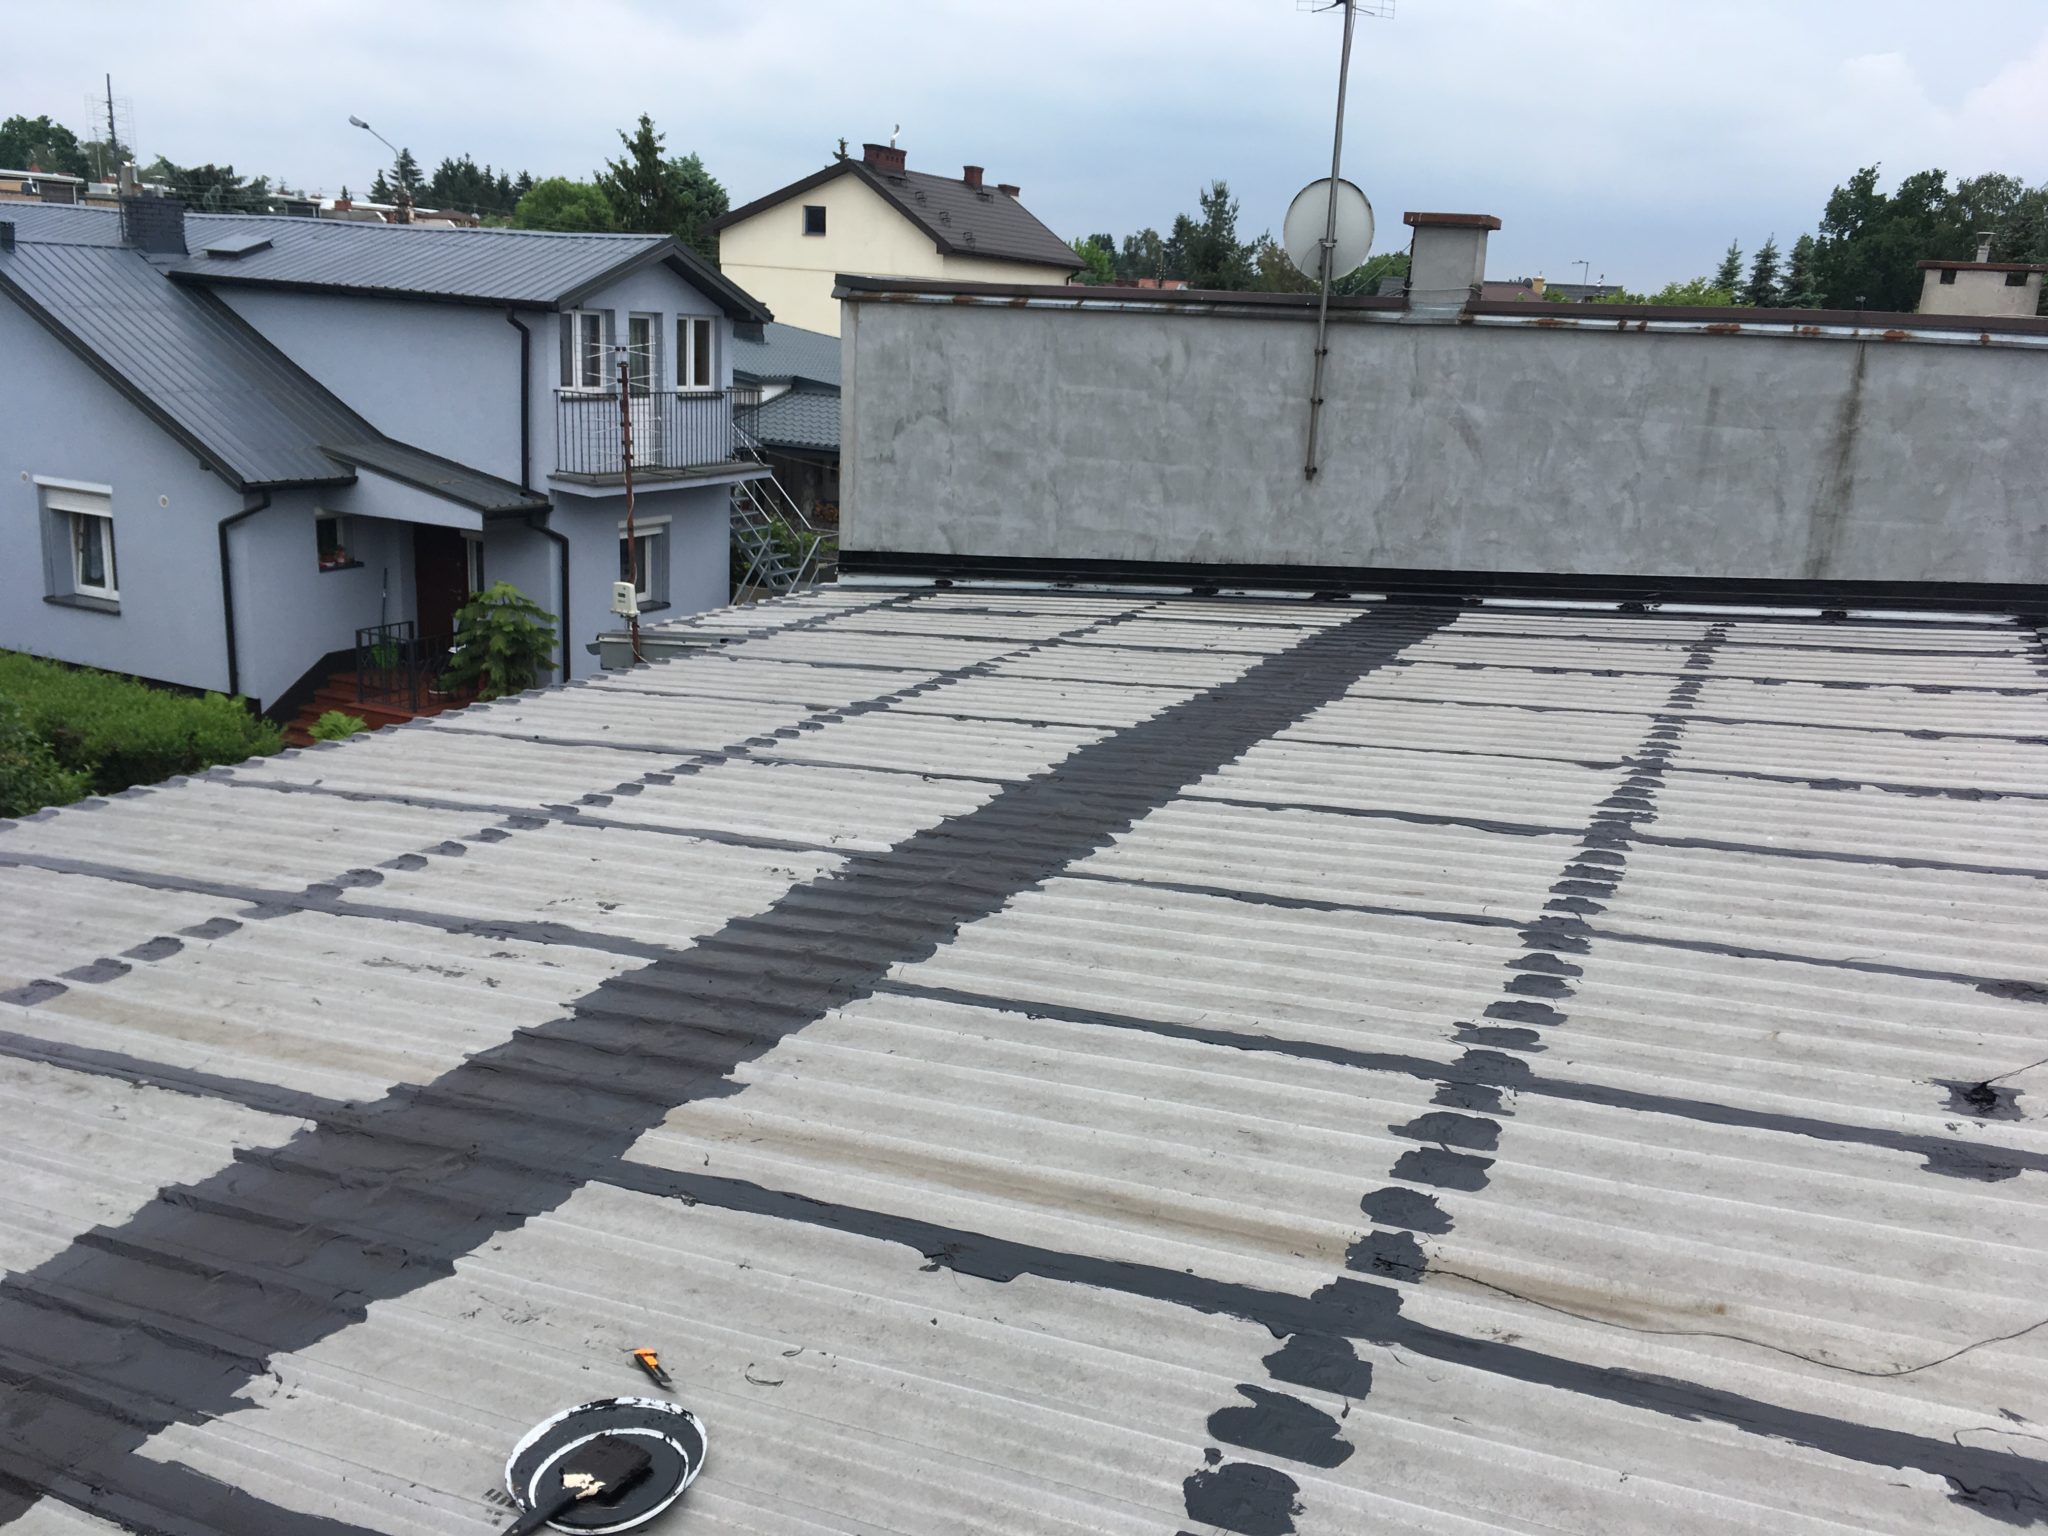 "Paskowanie" gumą CWS R CANADA WATERPROOF SYSTEM naprawa dachu z blachy